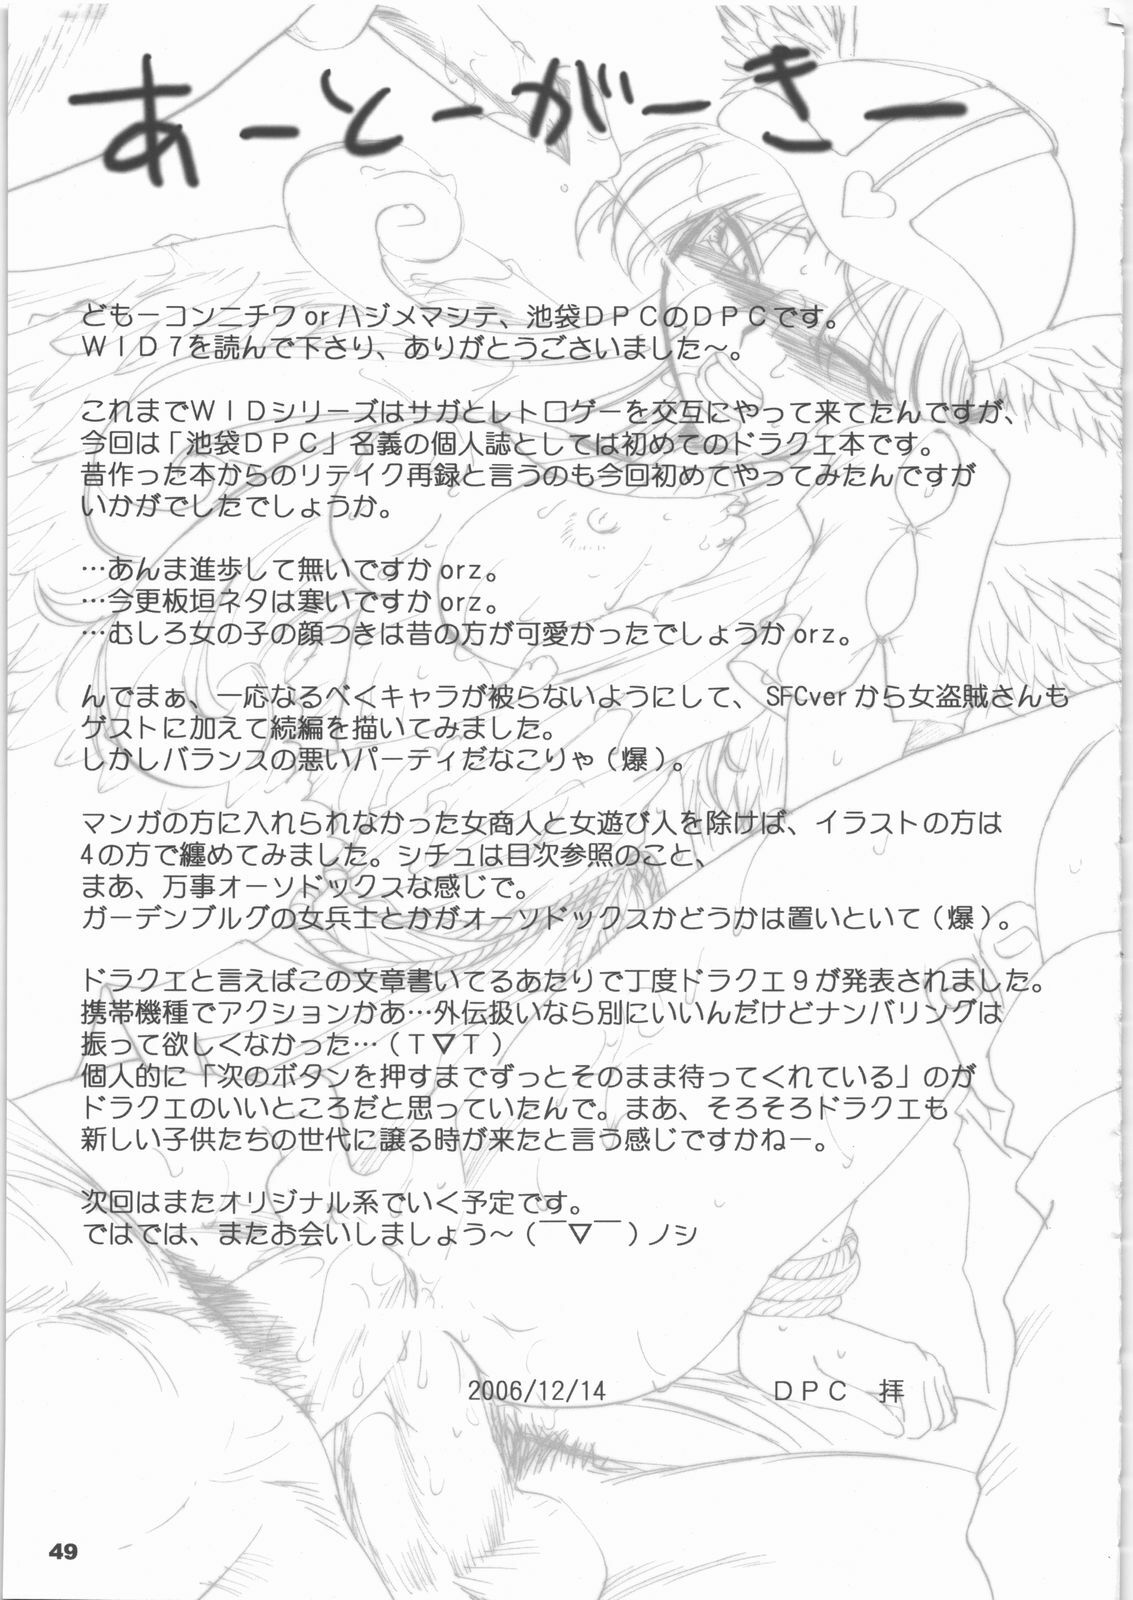 (C71) [Ikebukuro DPC (DPC)] White Impure Desire Vol. 7 (Dragon Quest III) page 48 full